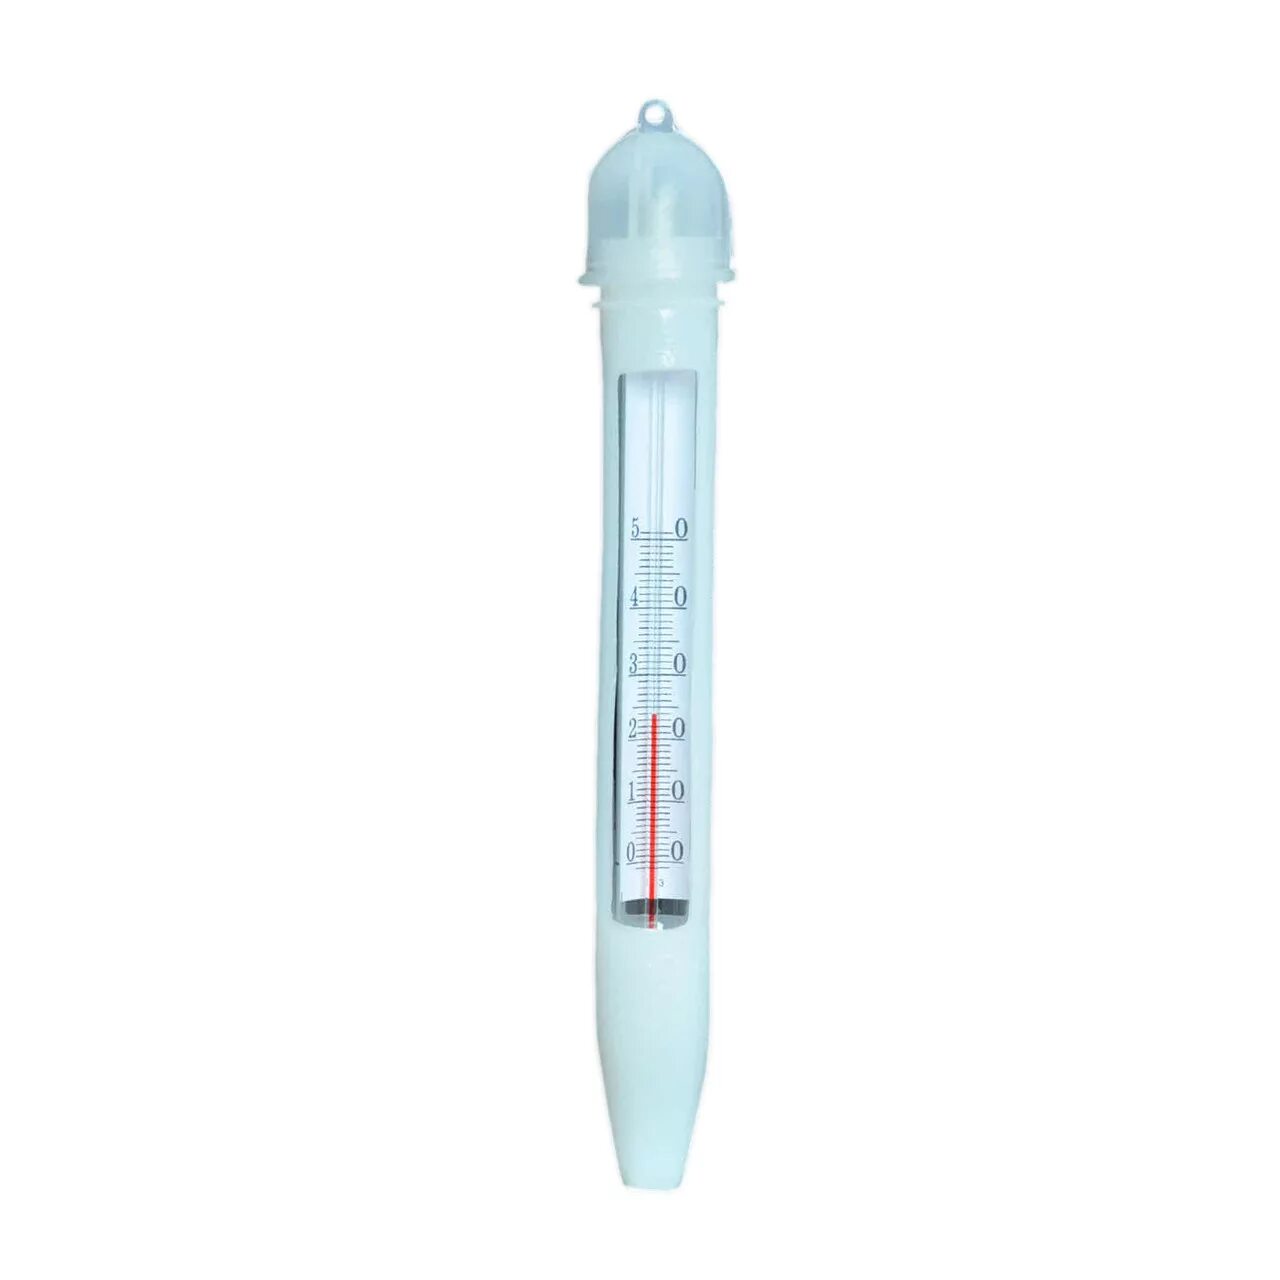 Исп 1м. Термометр ТБ-3-м1 исп. 1 (Водный) (Стеклоприбор). Термометр ТБ-3-м1 исп.1 для воды. Термометр ТБ-3-м1. Термометр для воды с поверкой ТБ-3-м1.